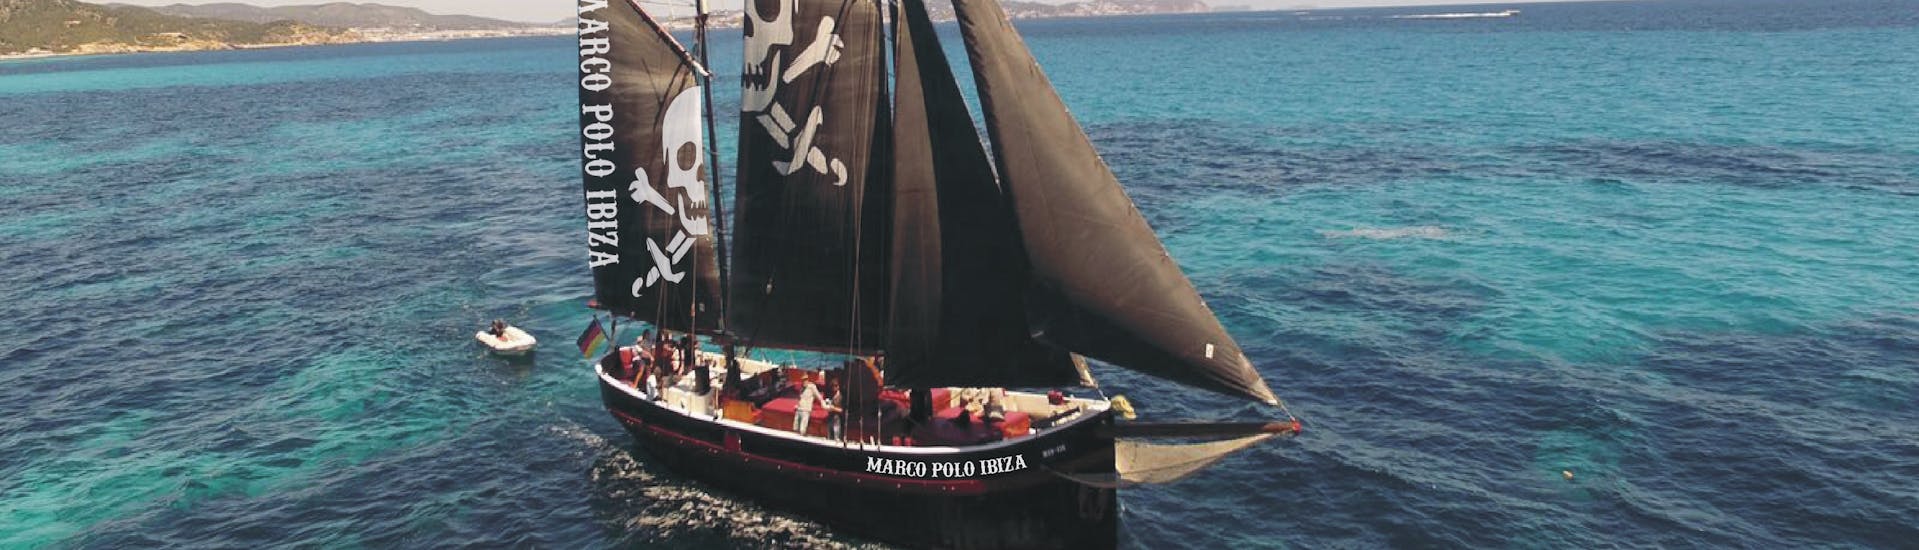 Nuestro barco pirata navega por el mar durante el Viaje Privado en Velero Pirata a Formentera con Apéritif & Snorkeling con Marco Polo Ibiza.